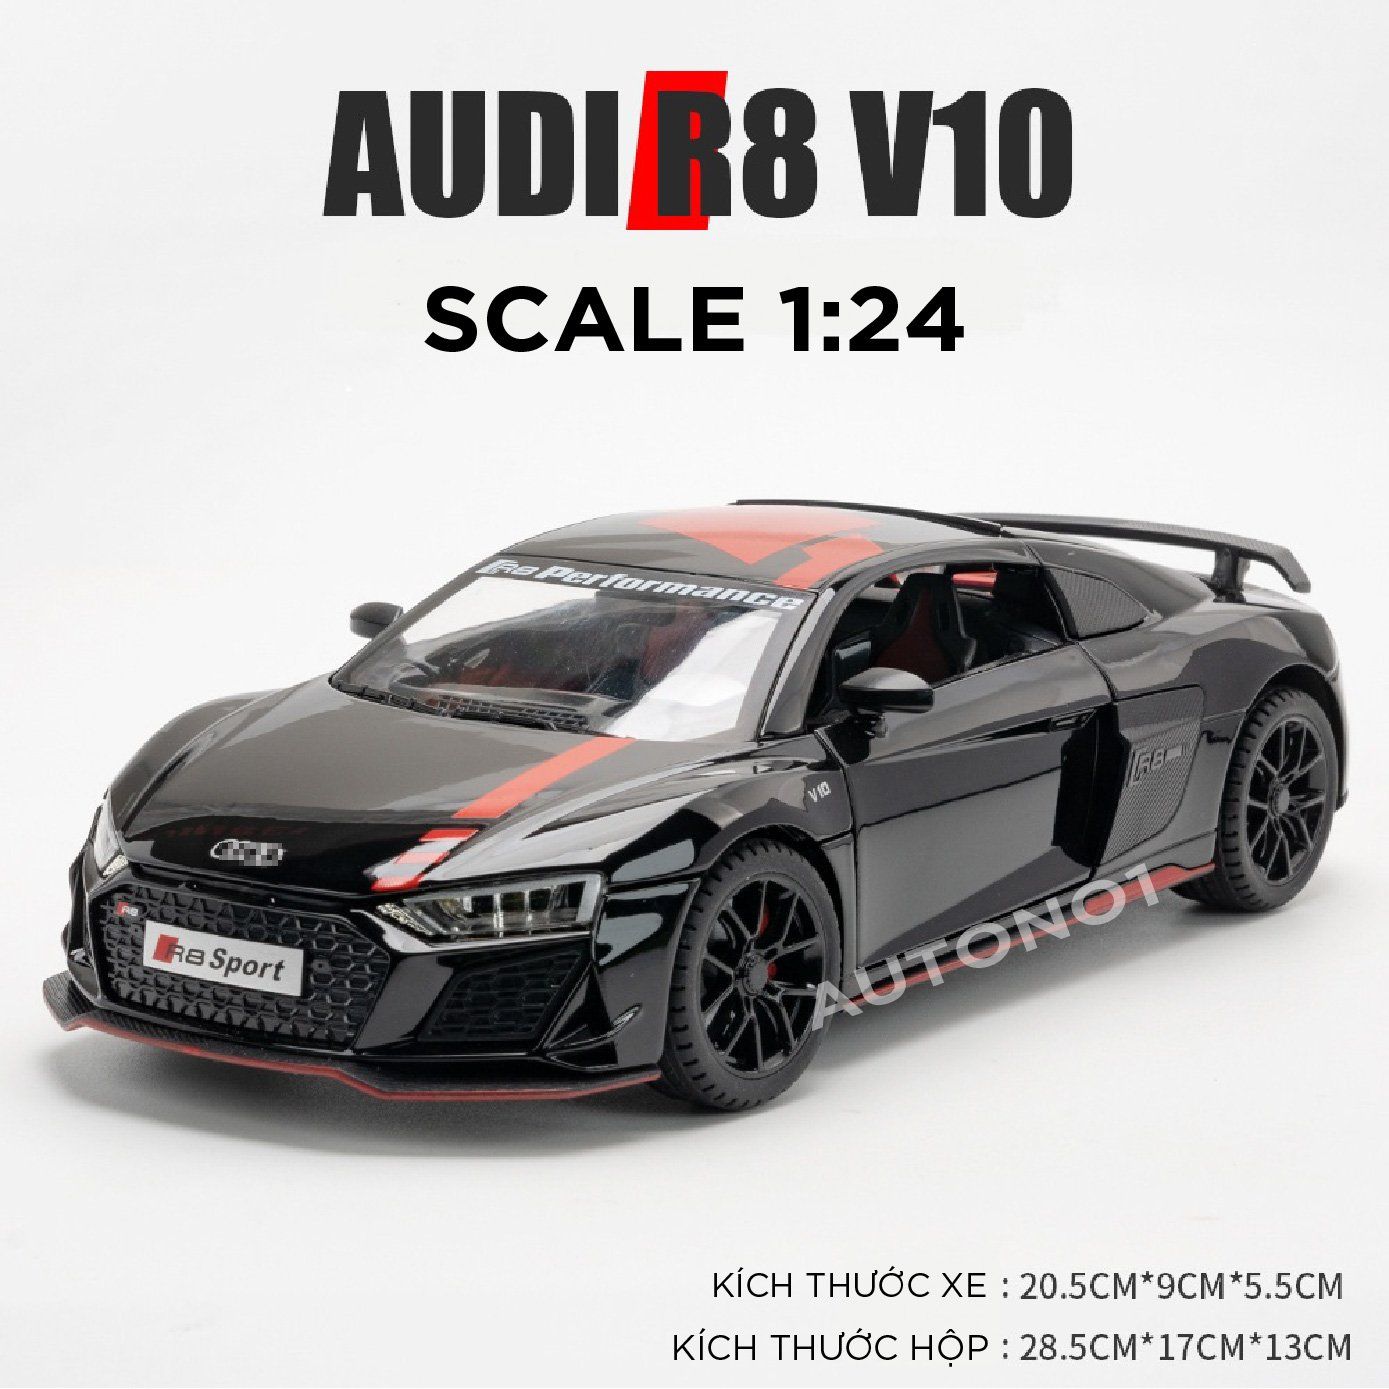  Mô hình xe Audi R8 V10 full open , đánh lái được tỉ lệ 1:24 Miniauto OT354 